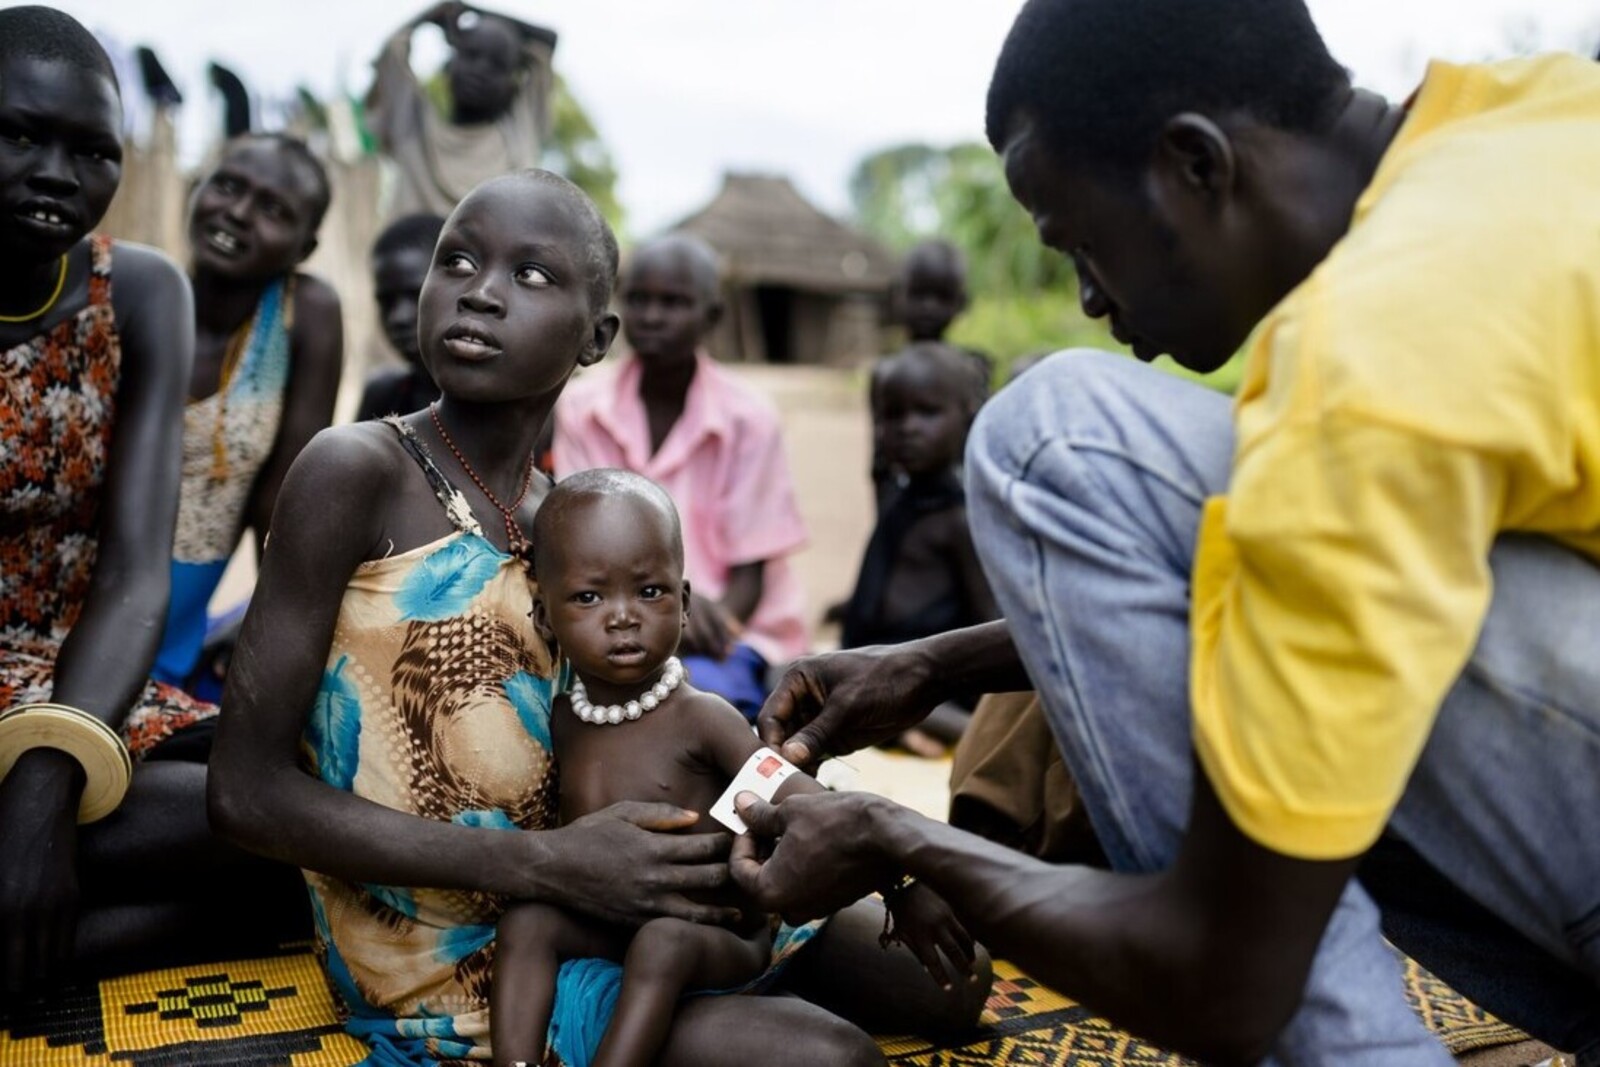 Mithilfe eines Maßbandes wird die Unterernährung bei Kleinkindern festgestellt. Das Kind auf dem Bild ist bereits im kritischen Bereich